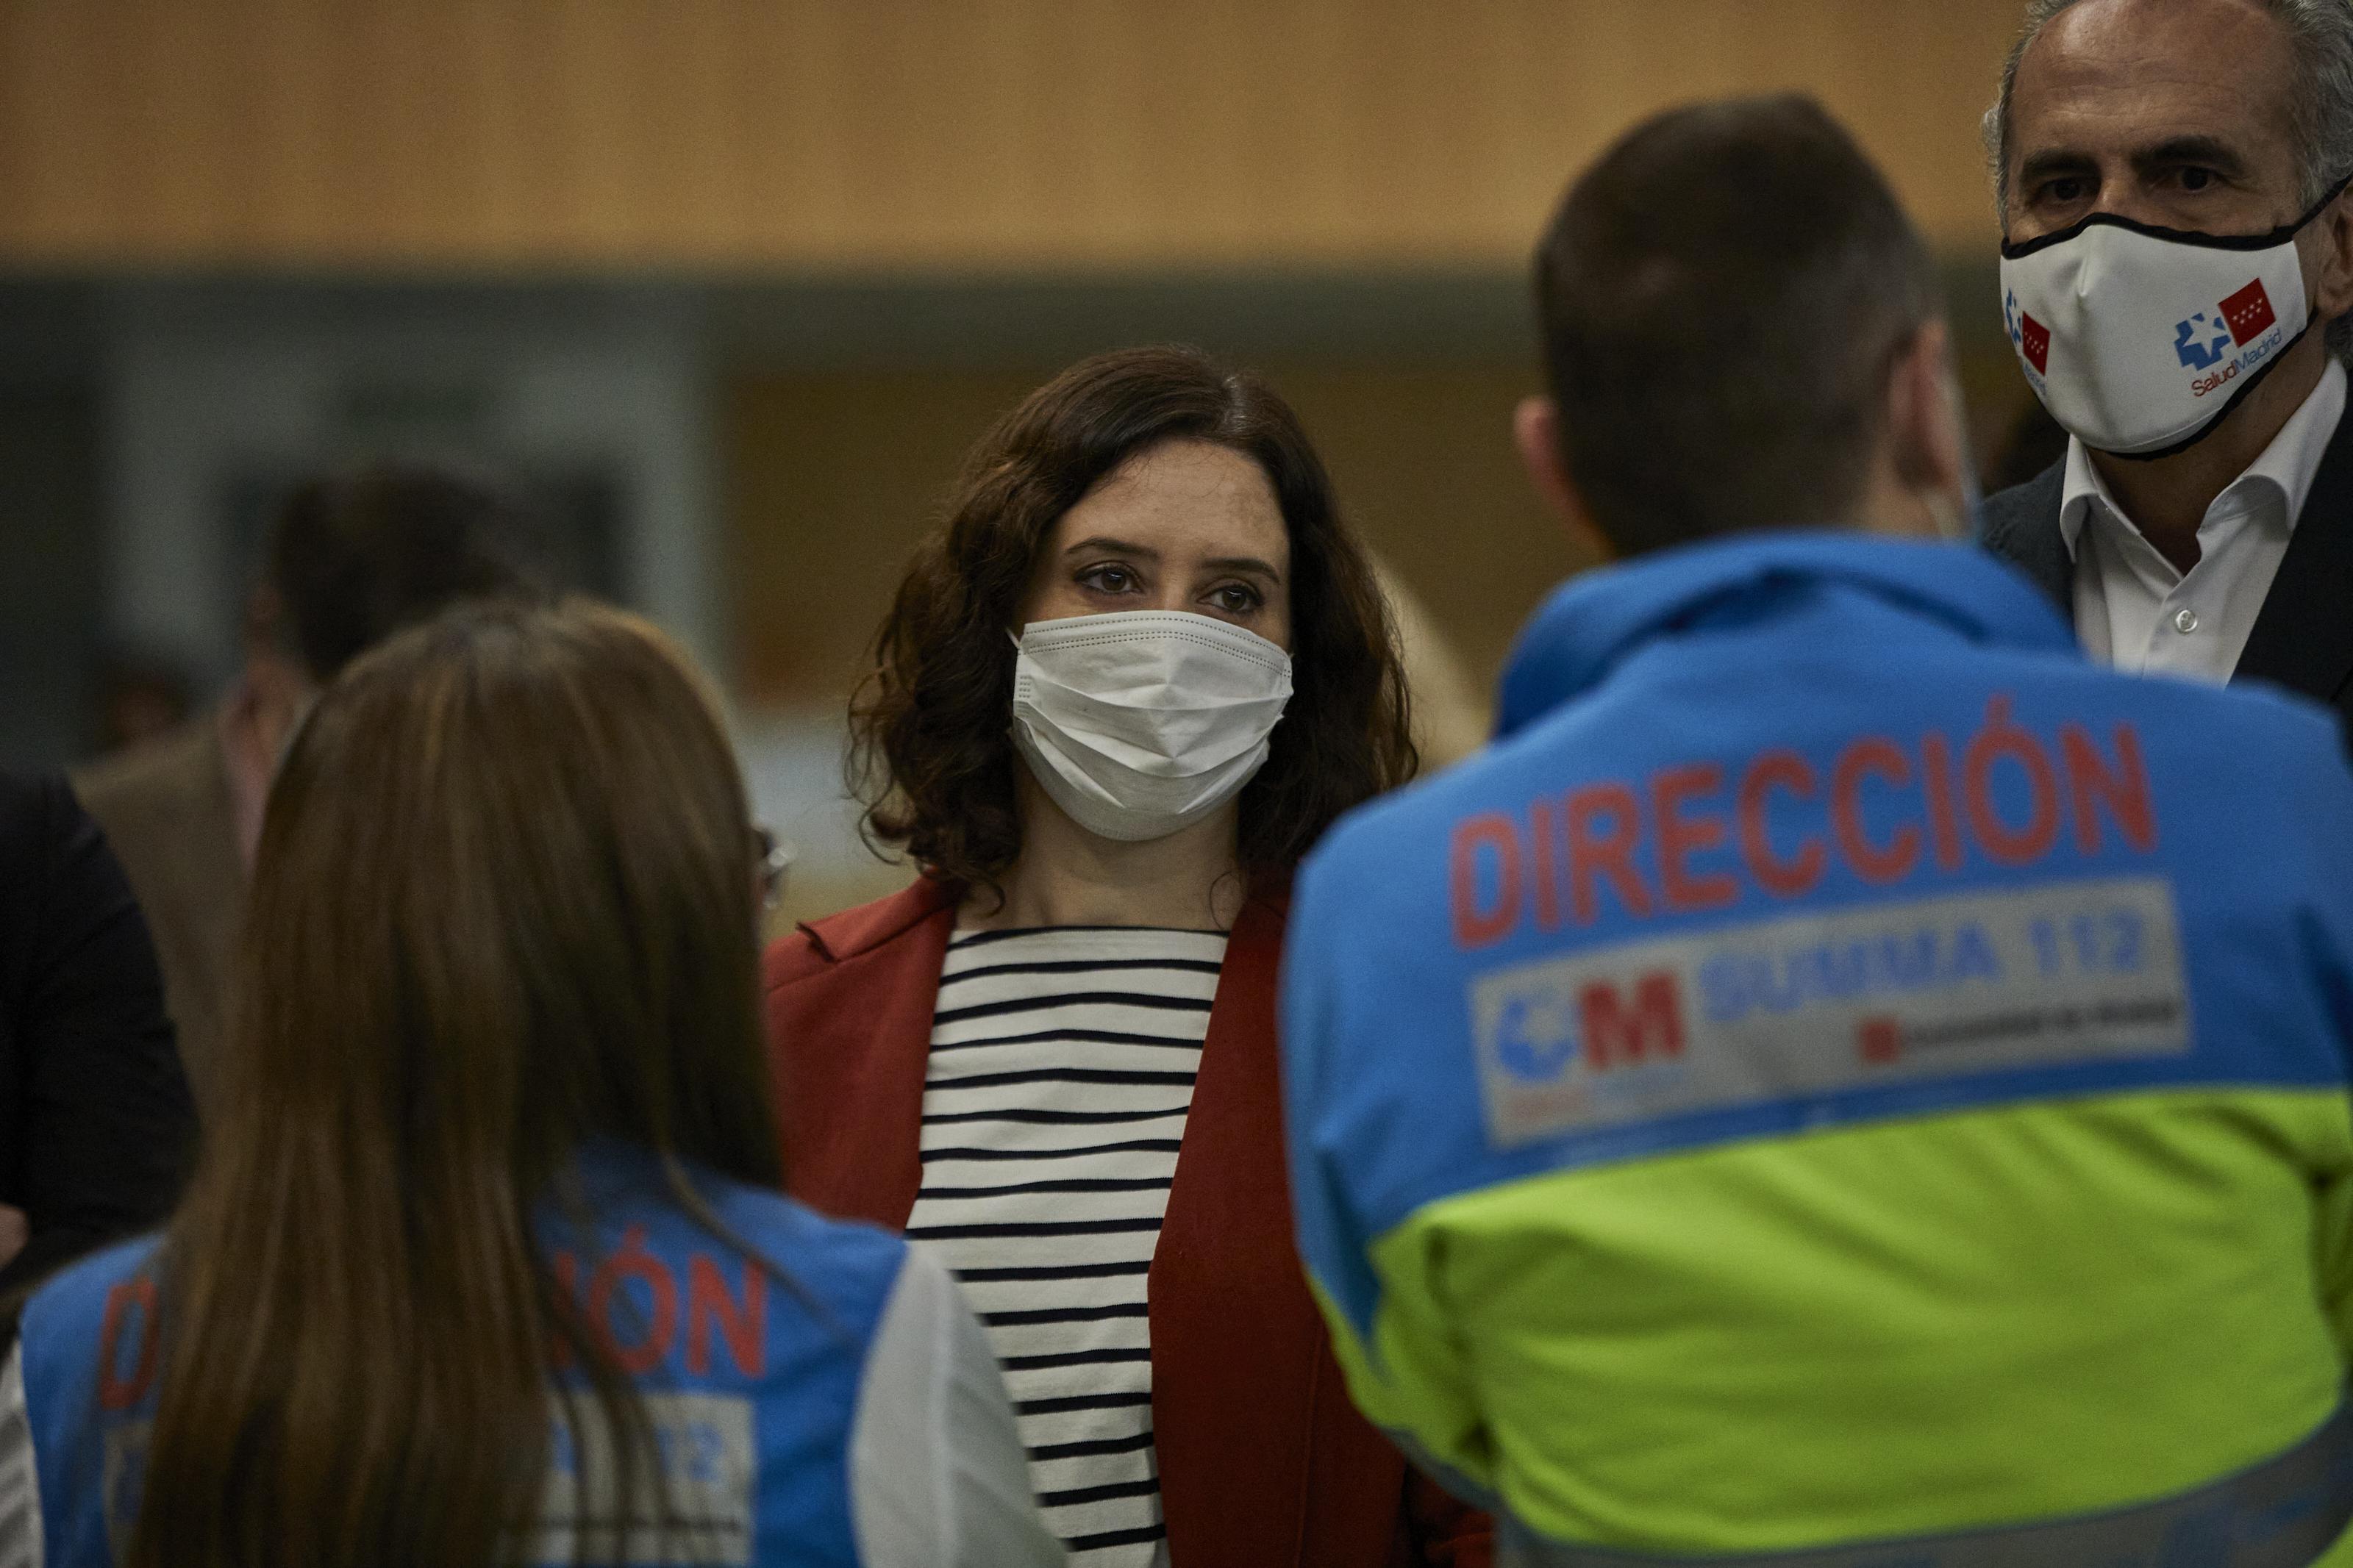 La presidenta de la Comunidad de Madrid, Isabel Díaz Ayuso, durante su visita a la Agencia de Seguridad y Emergencias de Madrid 112